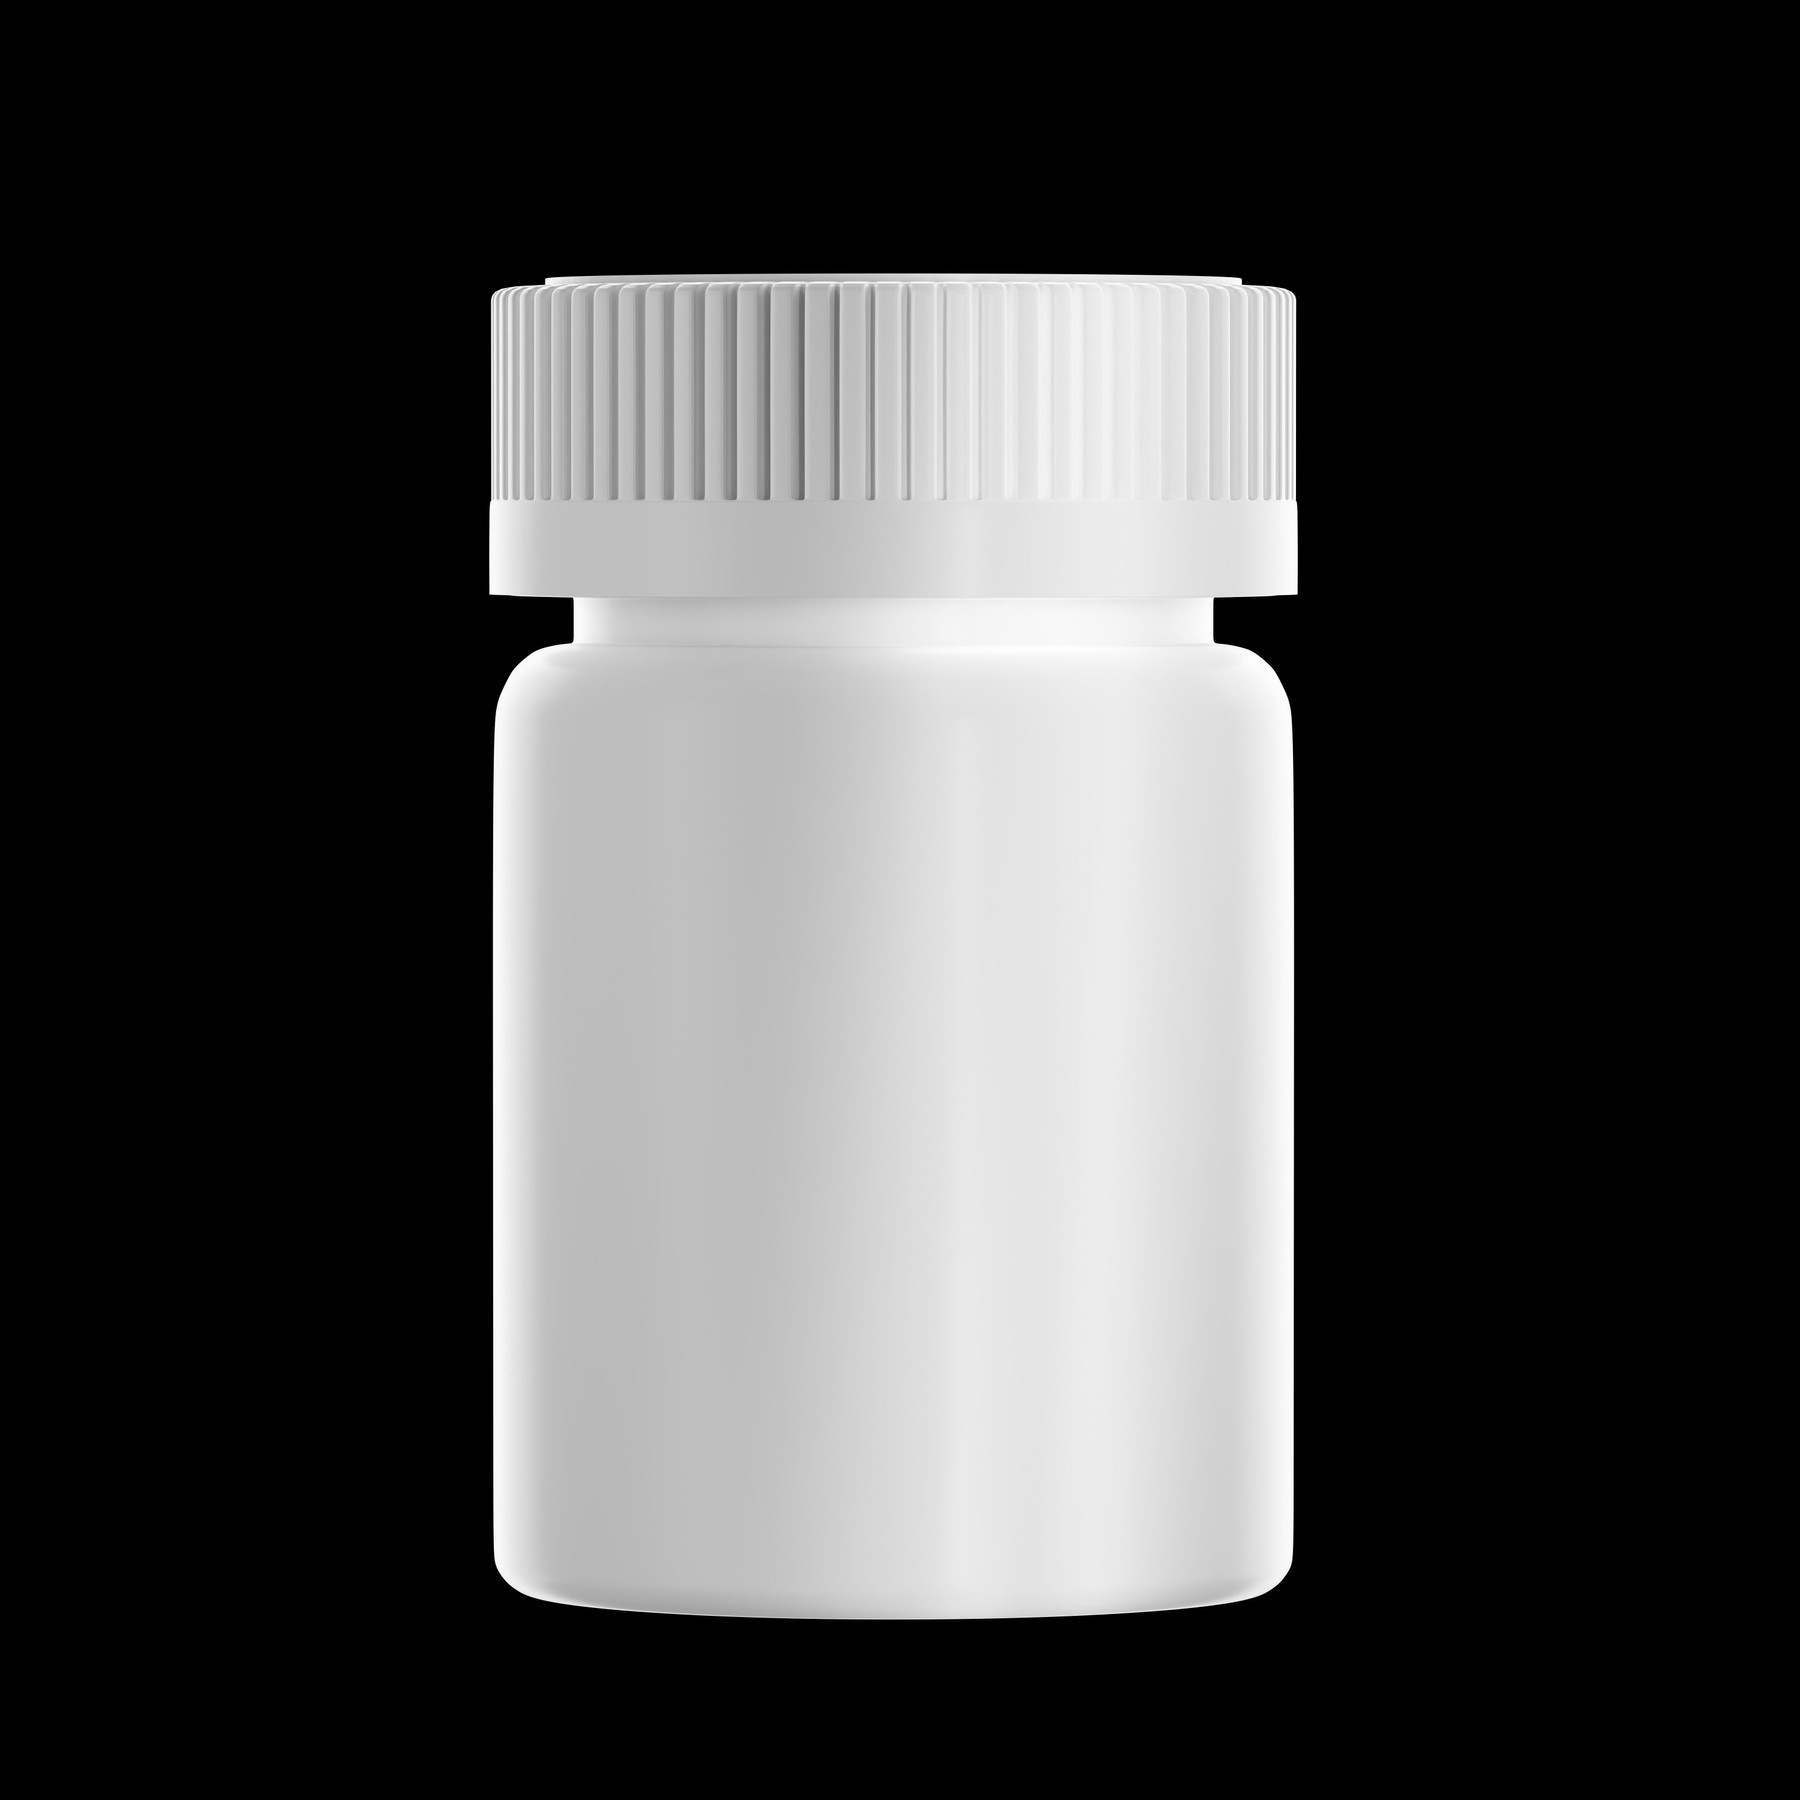 GG Monogram Pill Bottle - Large